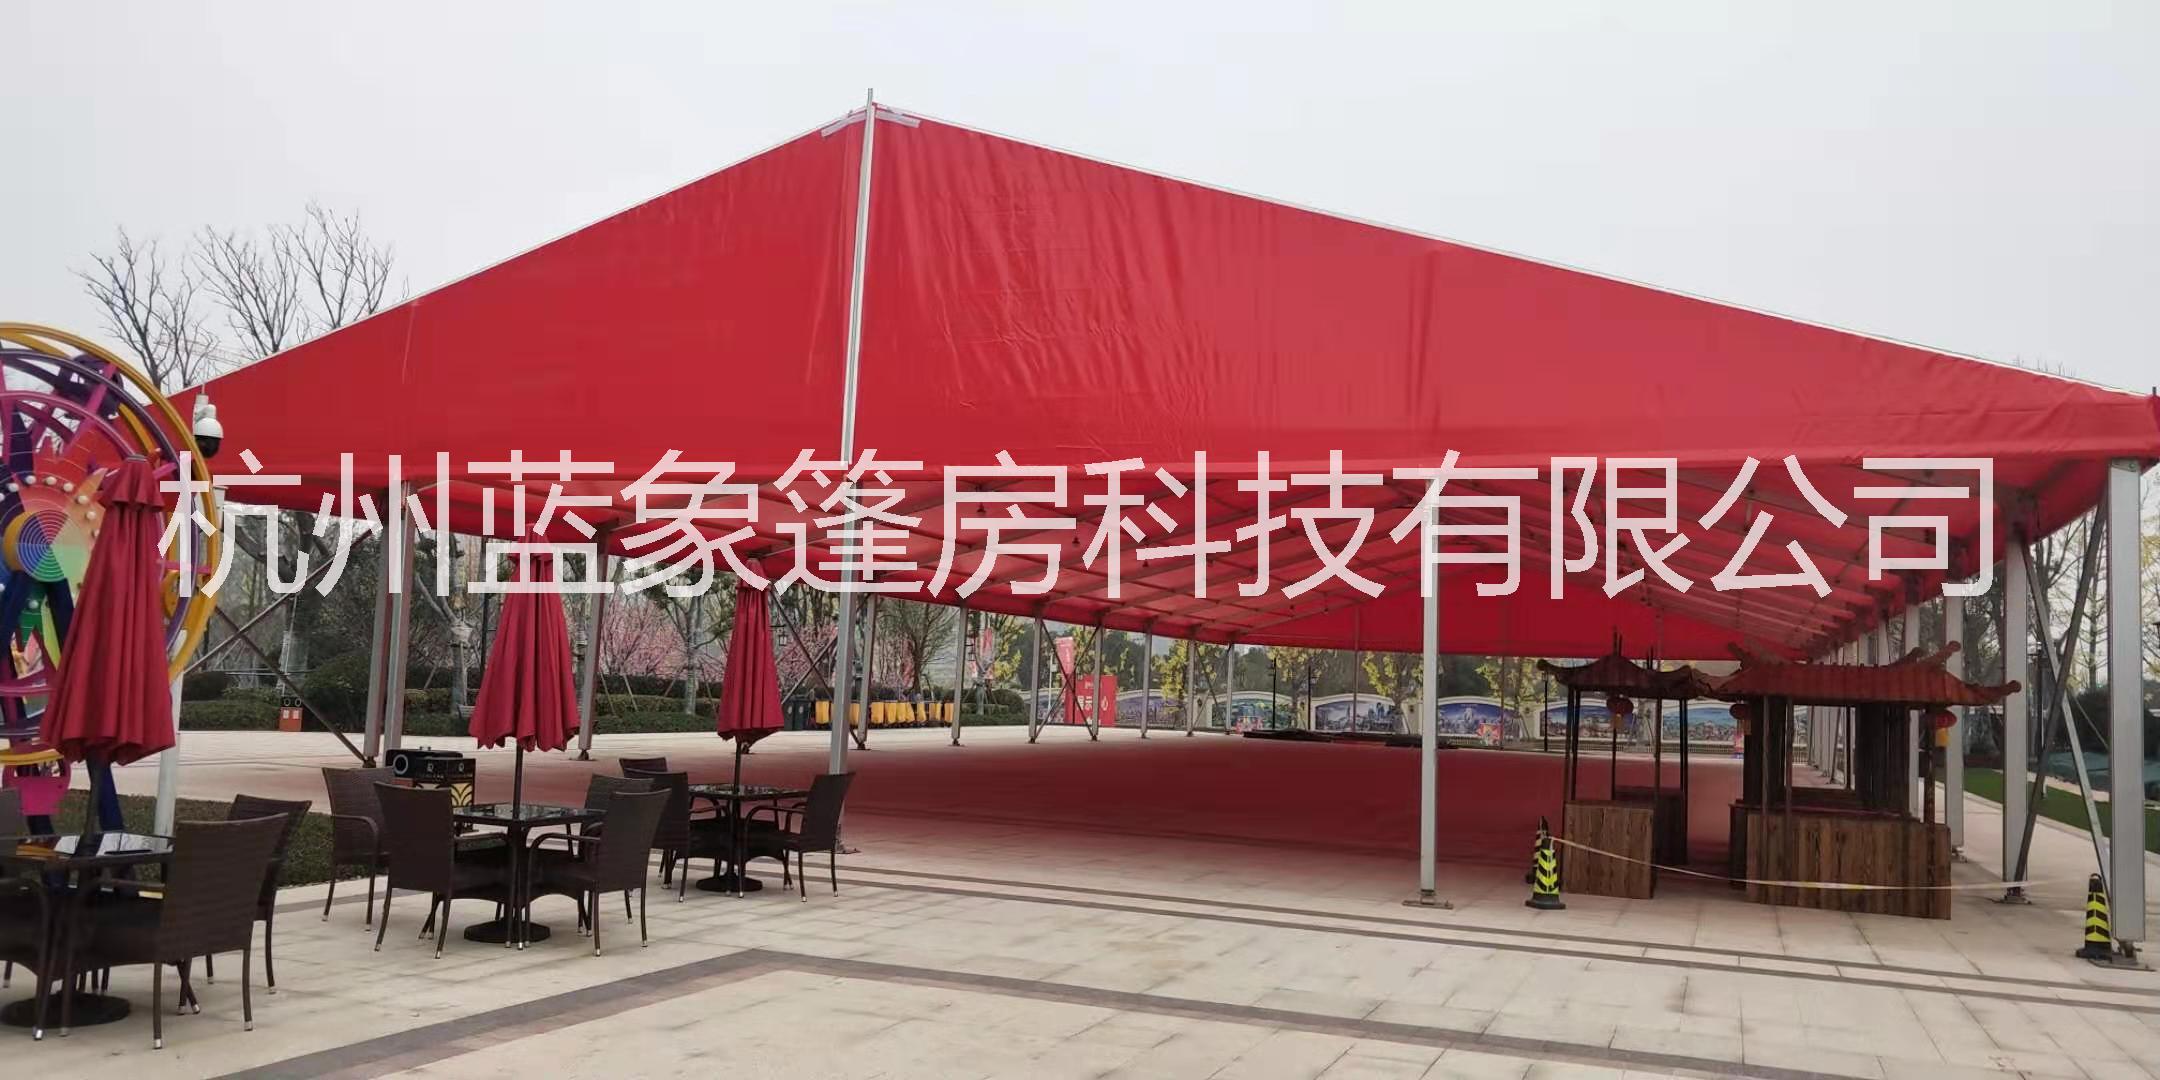 上海专业大型活动商务篷房搭建  篷房生产厂家婚礼庆典车展展示图片